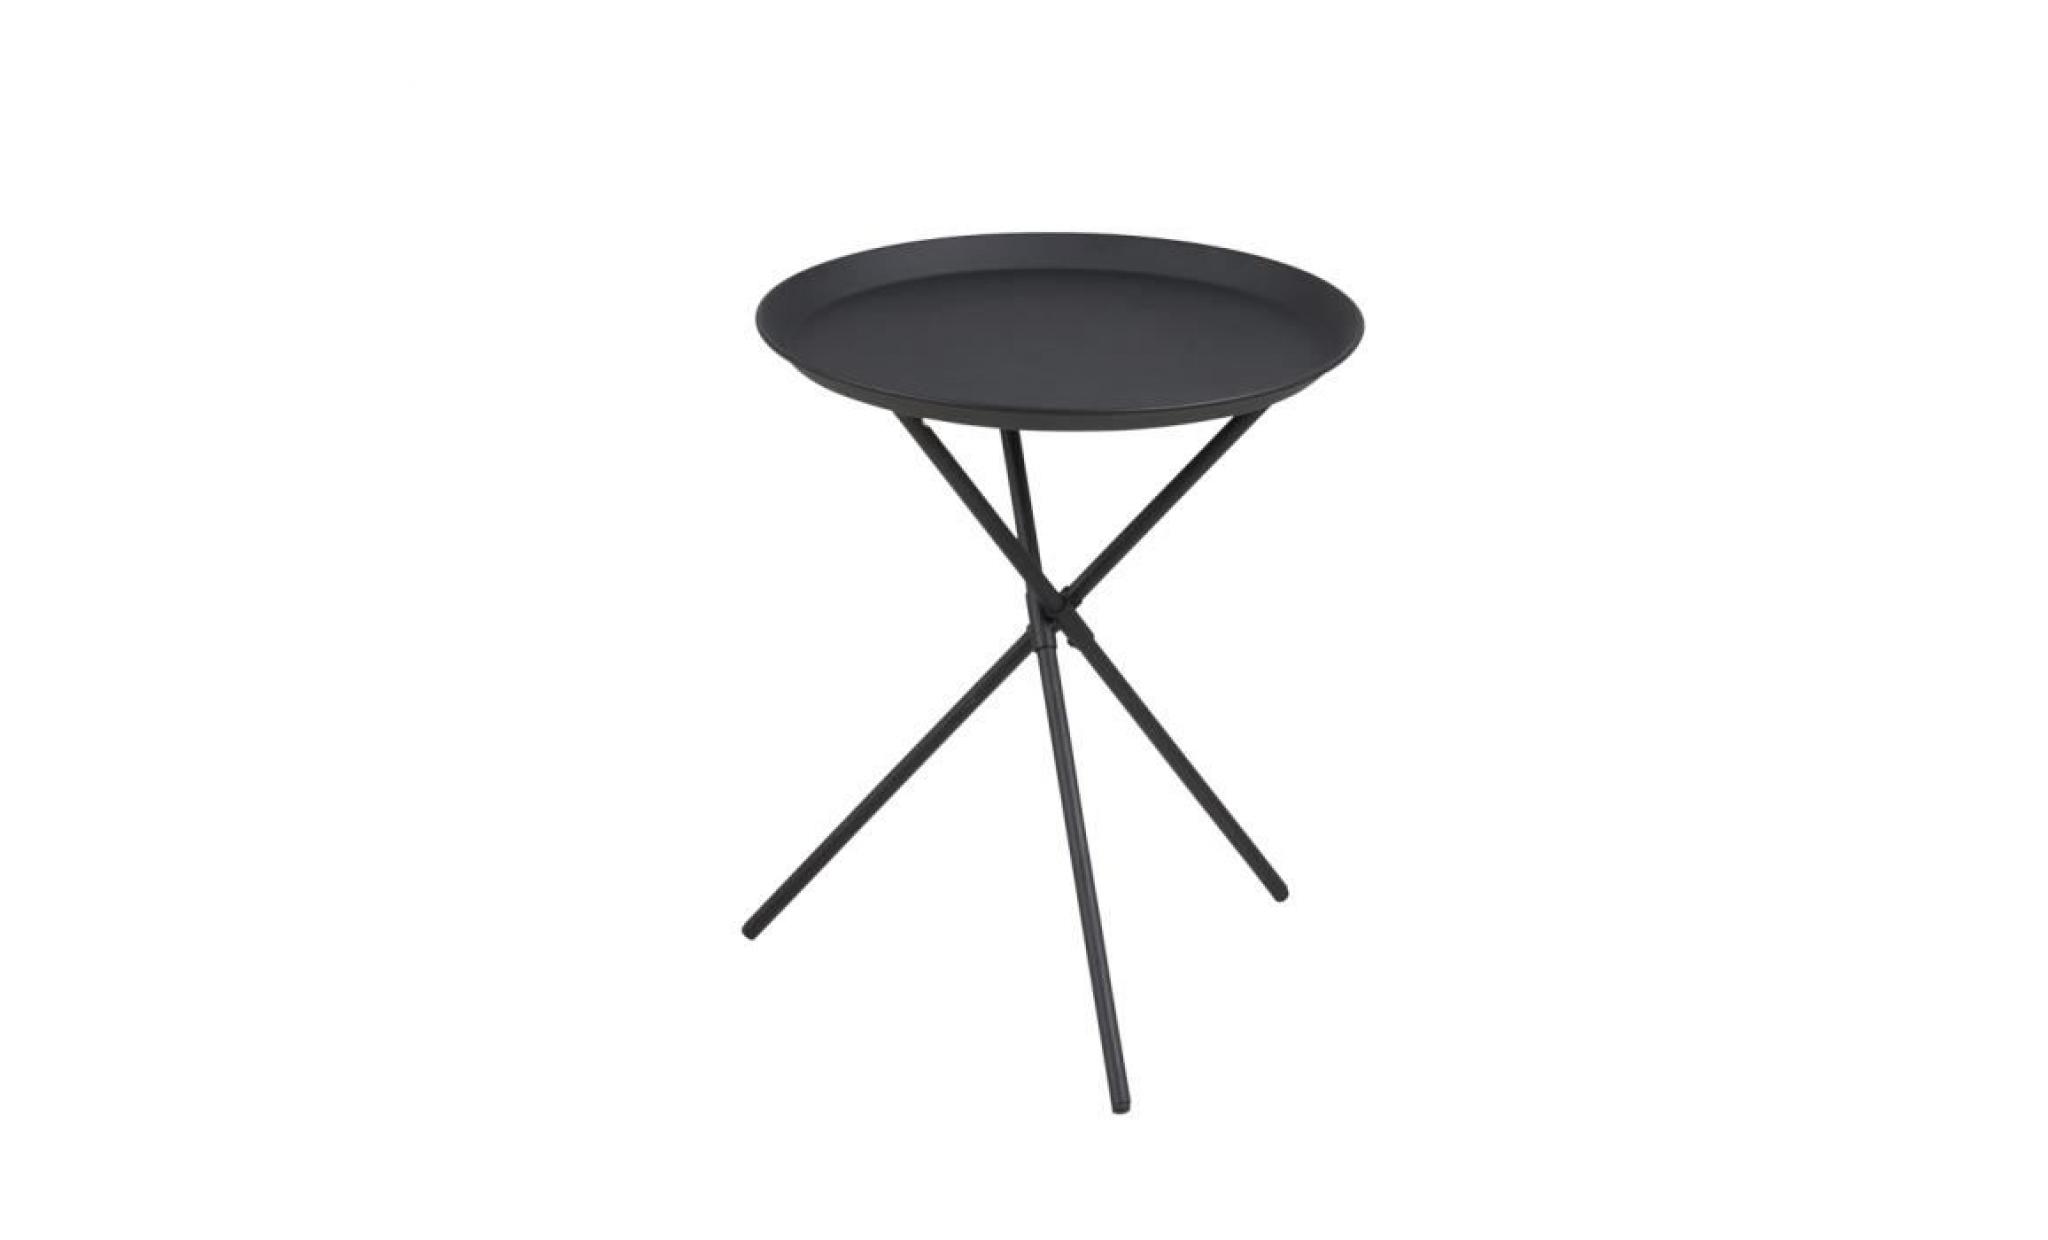 table basse / table d’appoint   sparky   38,5 cm   noir   métal revêtu de poudre   style scandinave   style industriel pas cher